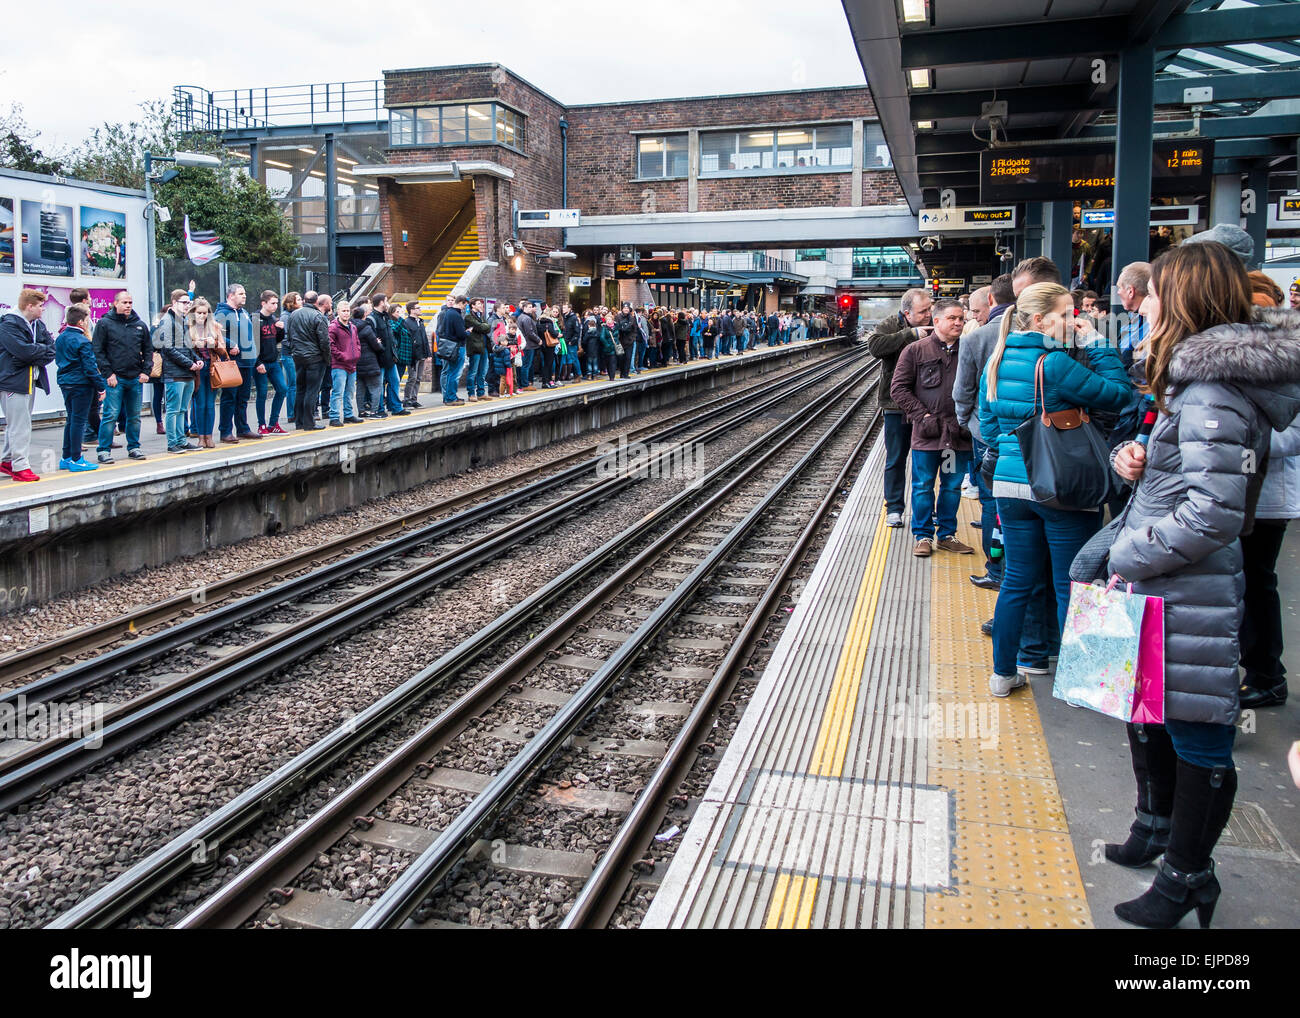 Gare de Wembley Park. Grande foule attendant le train de métro, après un match de rugby au stade de Wembley.. Banque D'Images